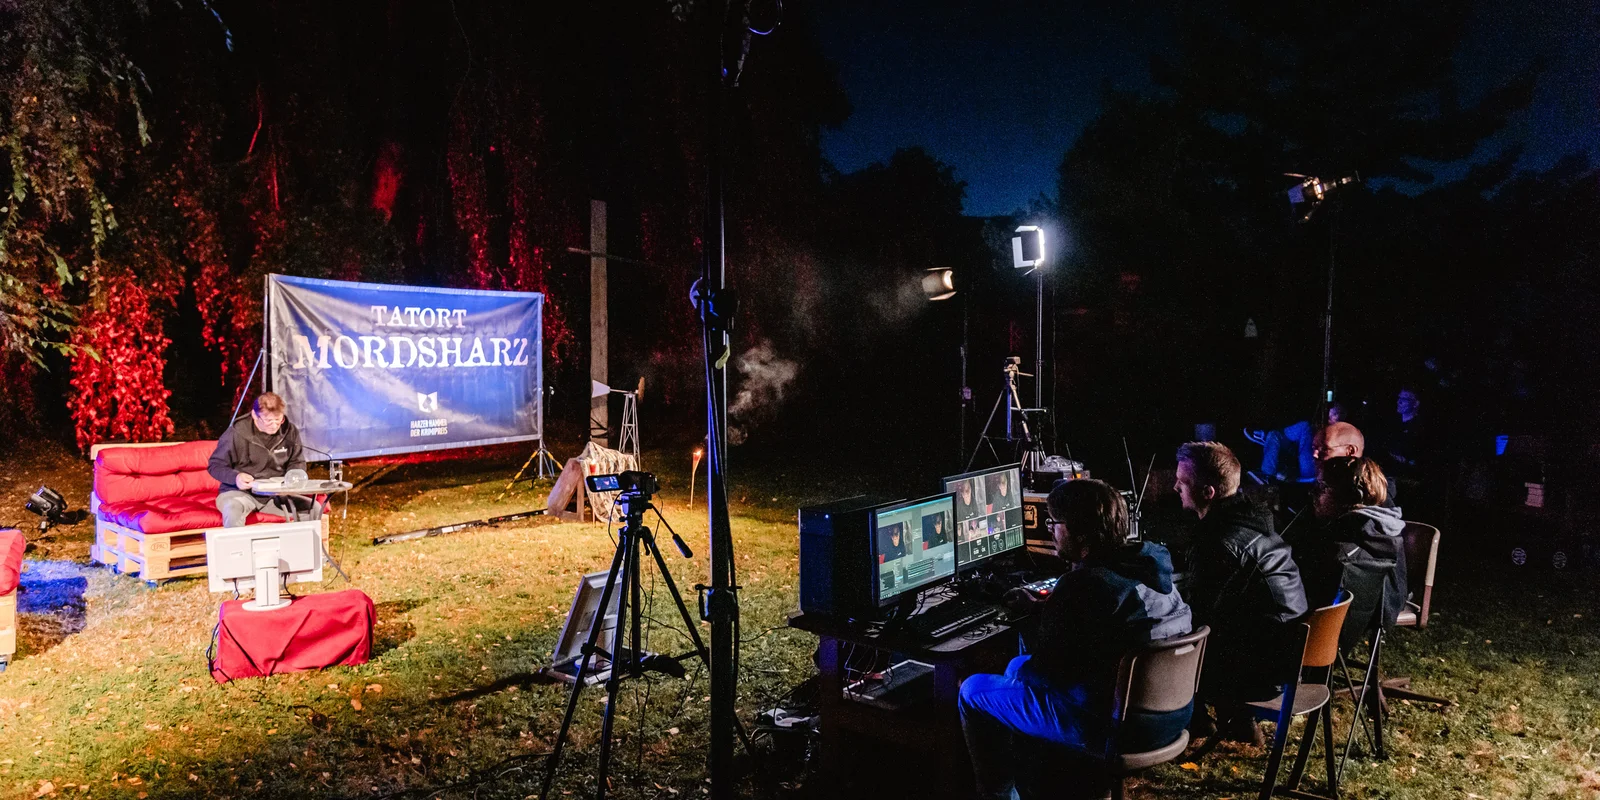 Ein Mann sitzt draußen vor Bäumen auf einem Palettensofa neben einem Plakat mit der Aufschrift: "Tatort Mordsharz". Davor sitzen 4 Personen vor Bildschirmen, Kamera und Scheinwerfern.